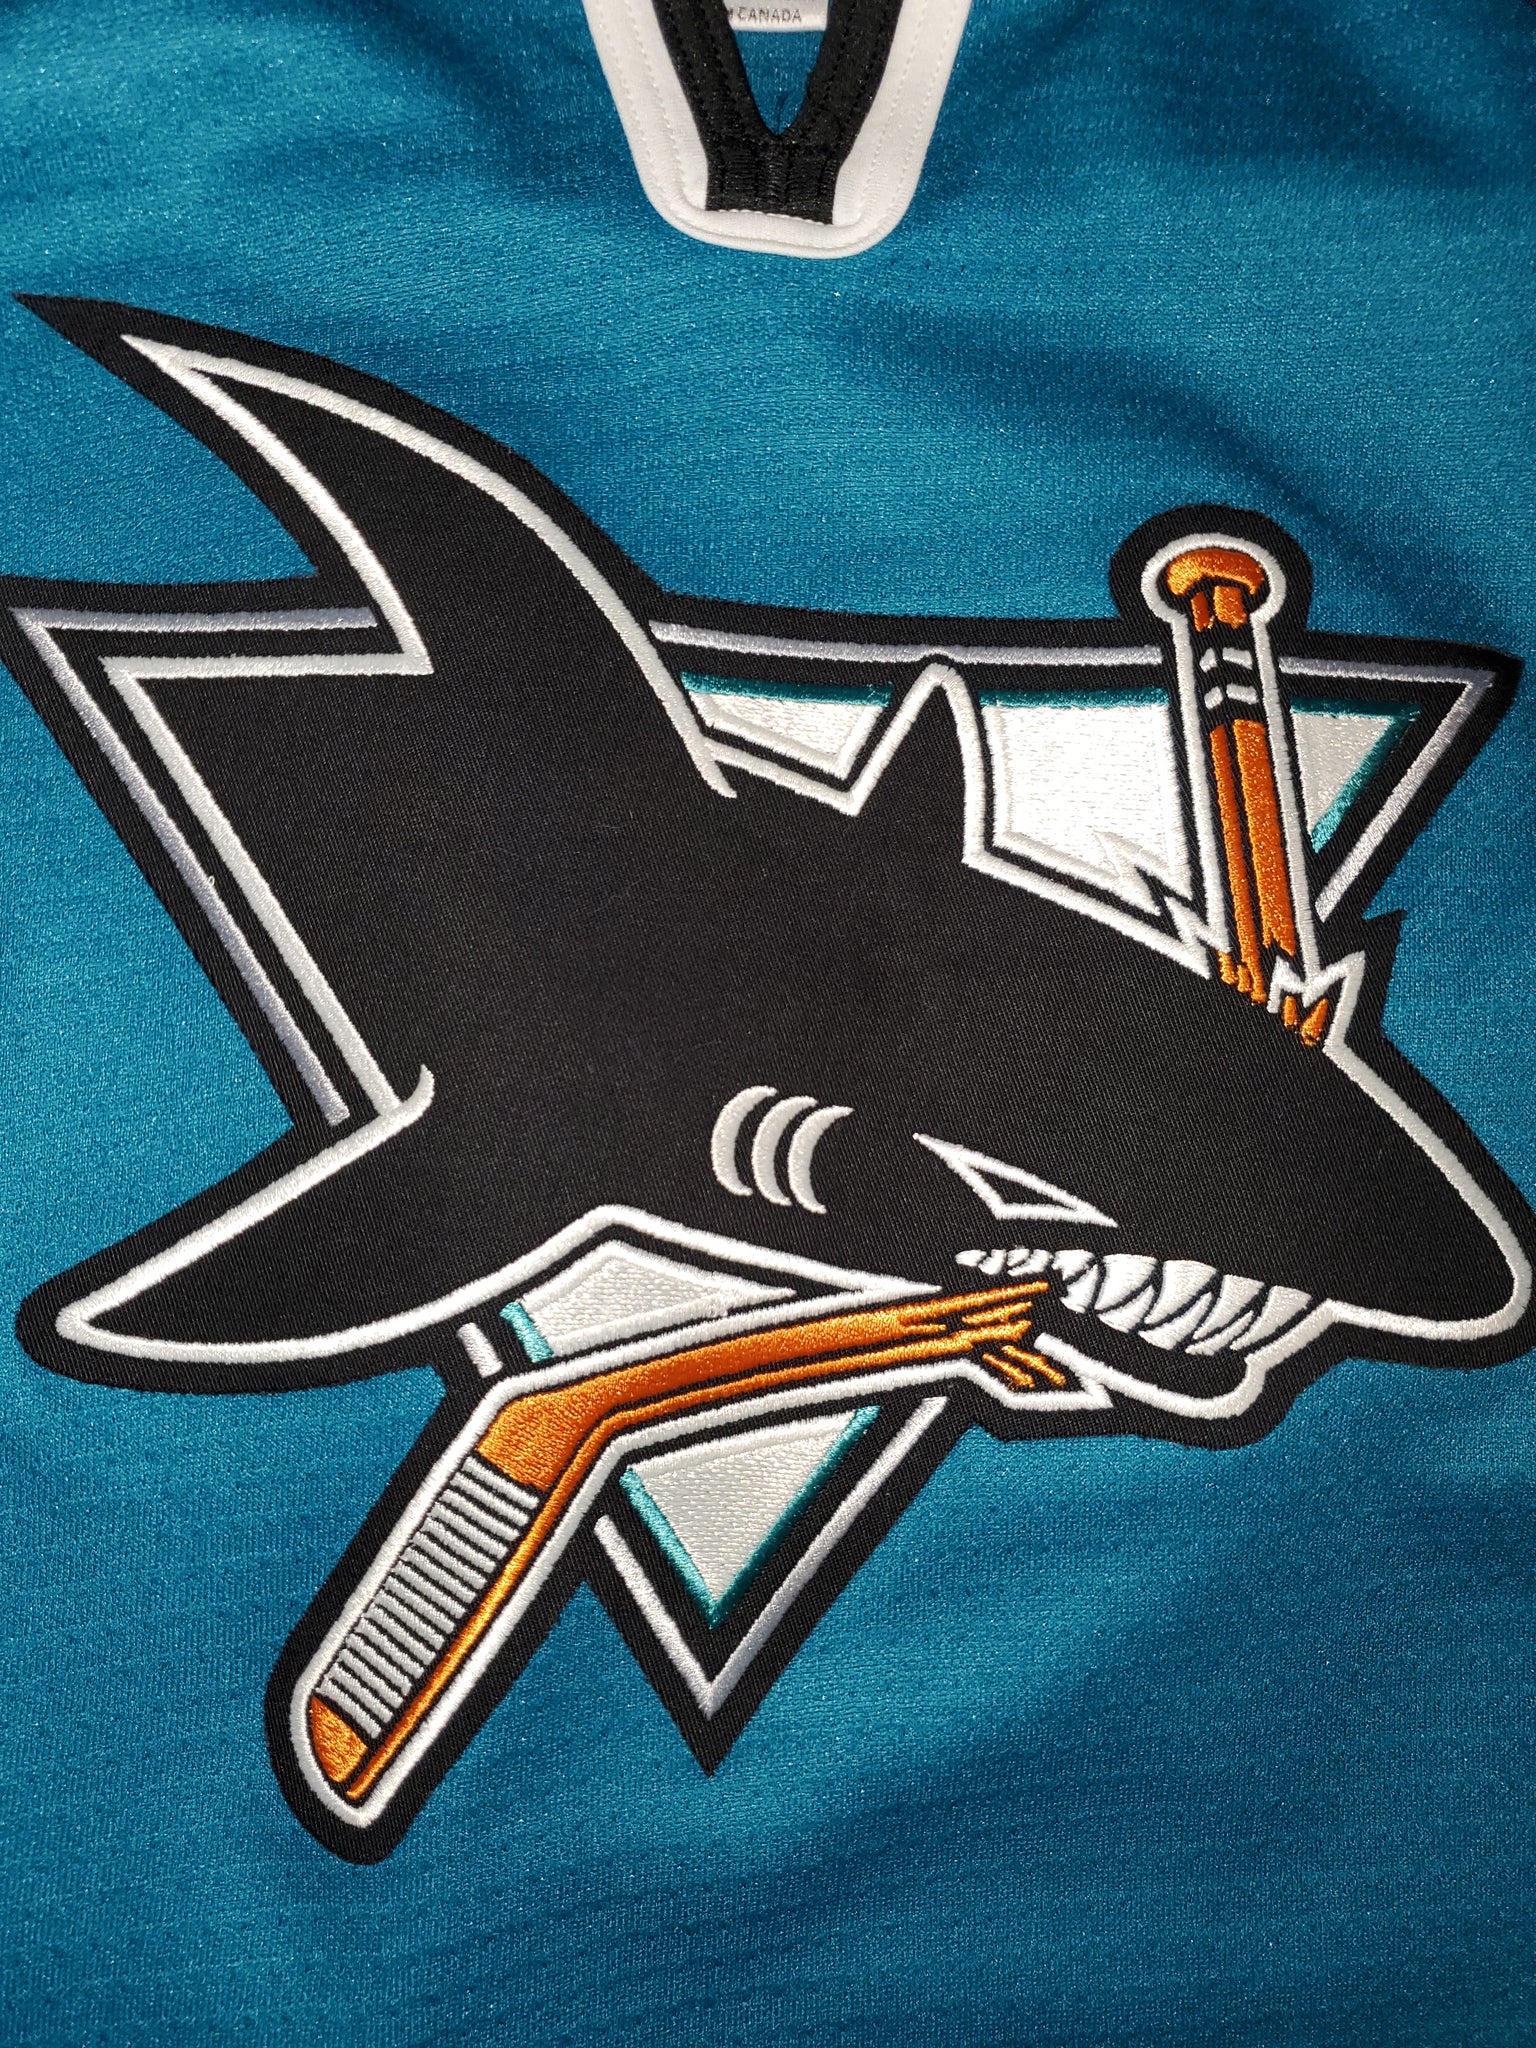 Vintage 1992 San Jose sharks Lunch Bag NHL Hockey - Depop